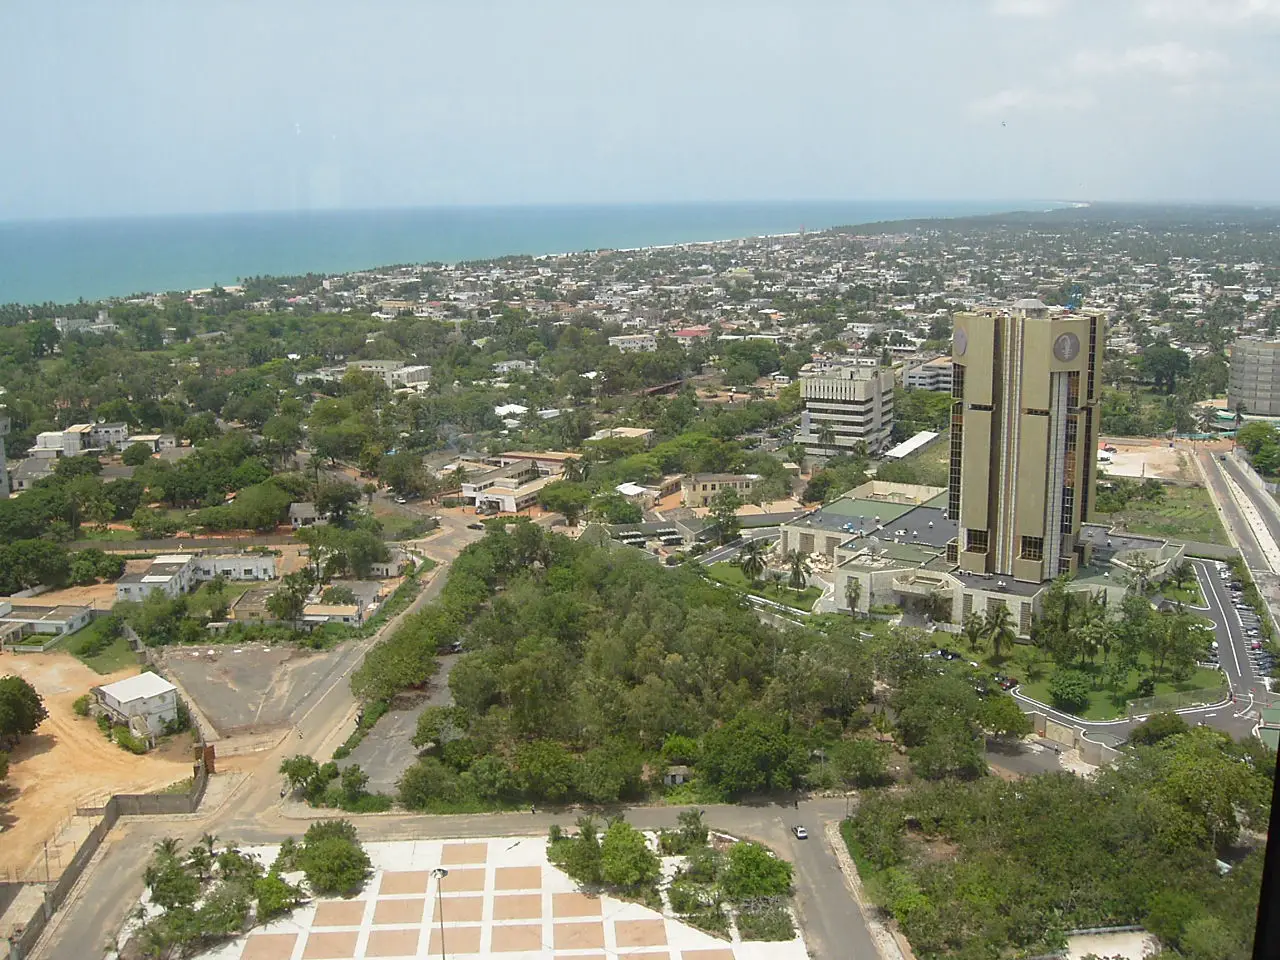 La ville de Lomé, capitale du Togo. Image d'illustration © Droits réservés